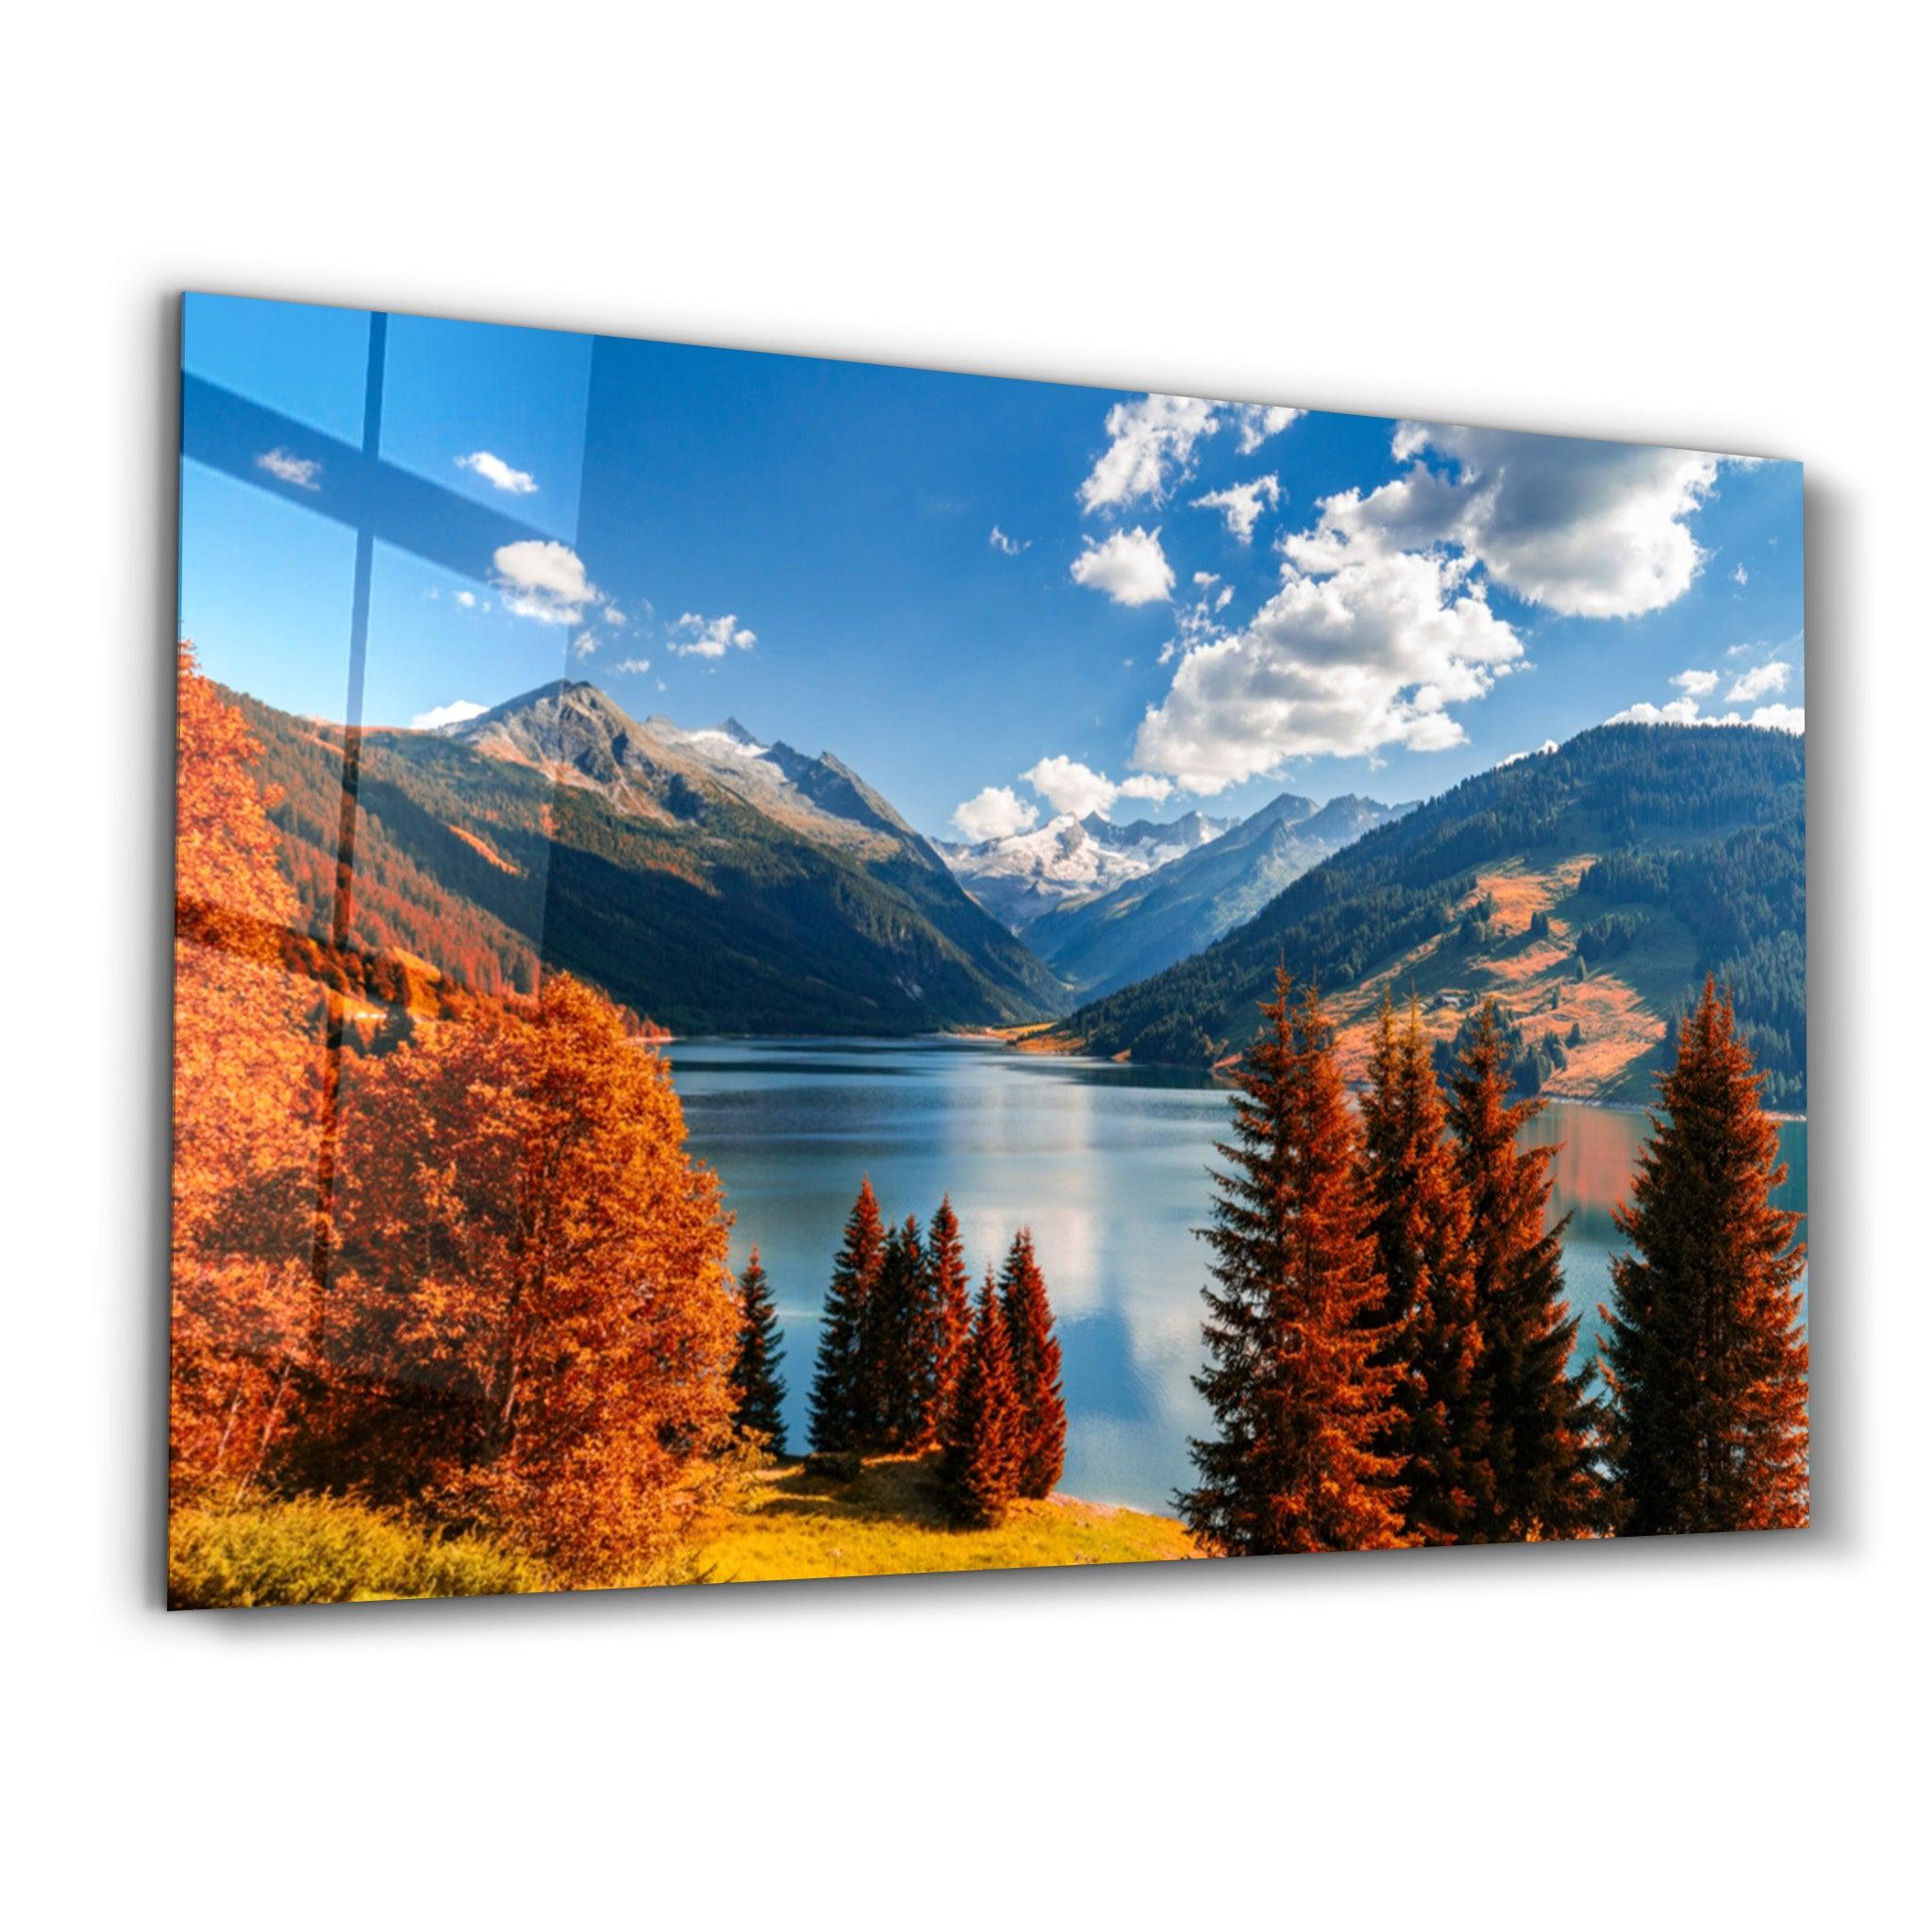 Lake and Mountain Landscape | Glass Wall Art - ArtDesigna Glass Printing Wall Art